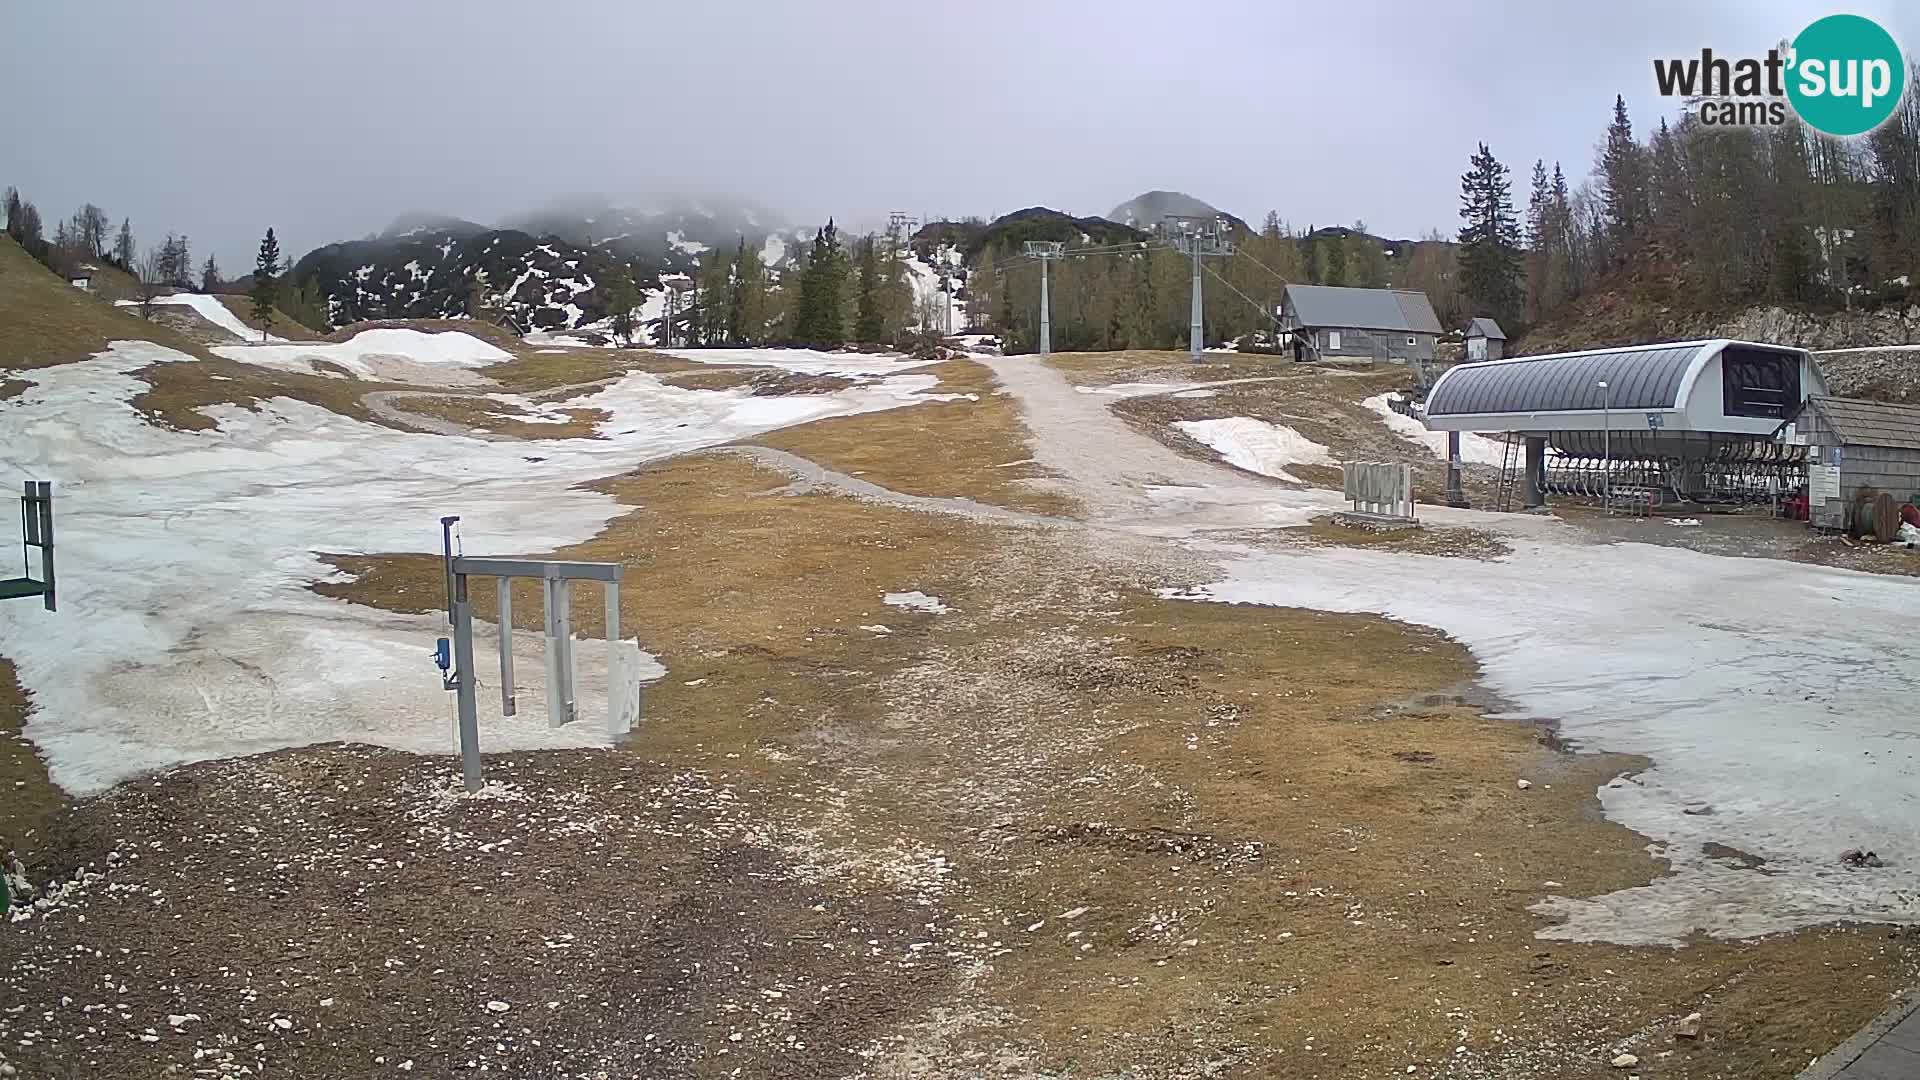 Stazione sciistica Vogel – parko neve